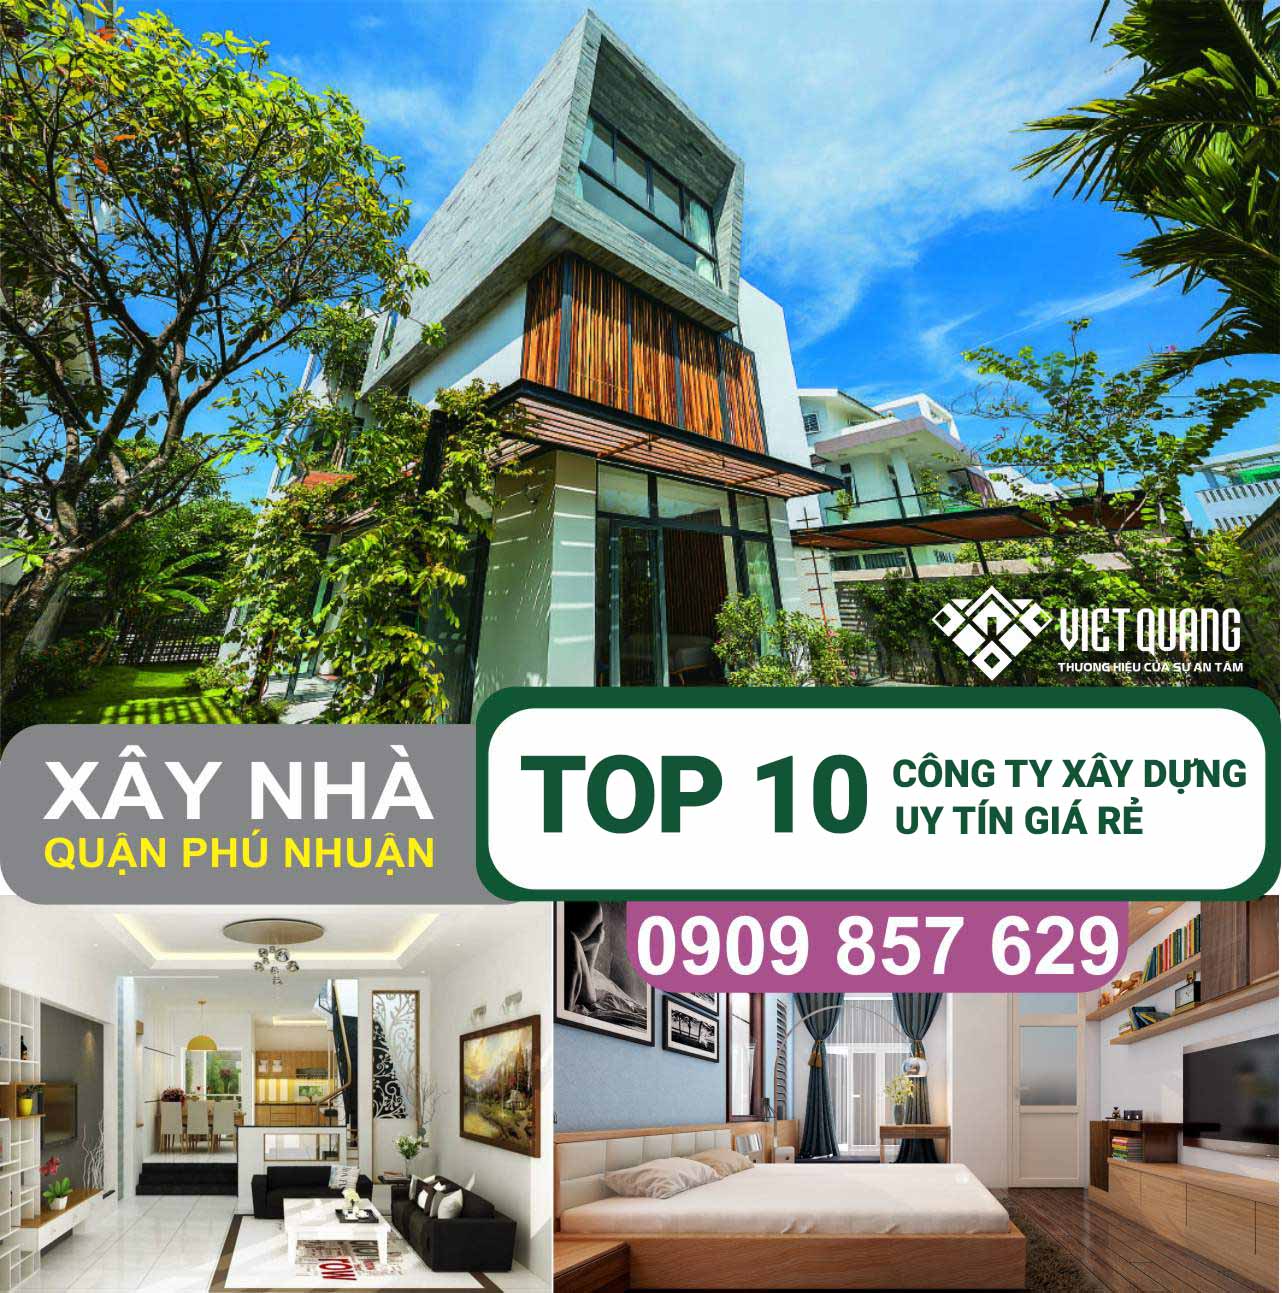 TOP 10 công ty xây dựng nhà trọn gói Quận Phú Nhuận